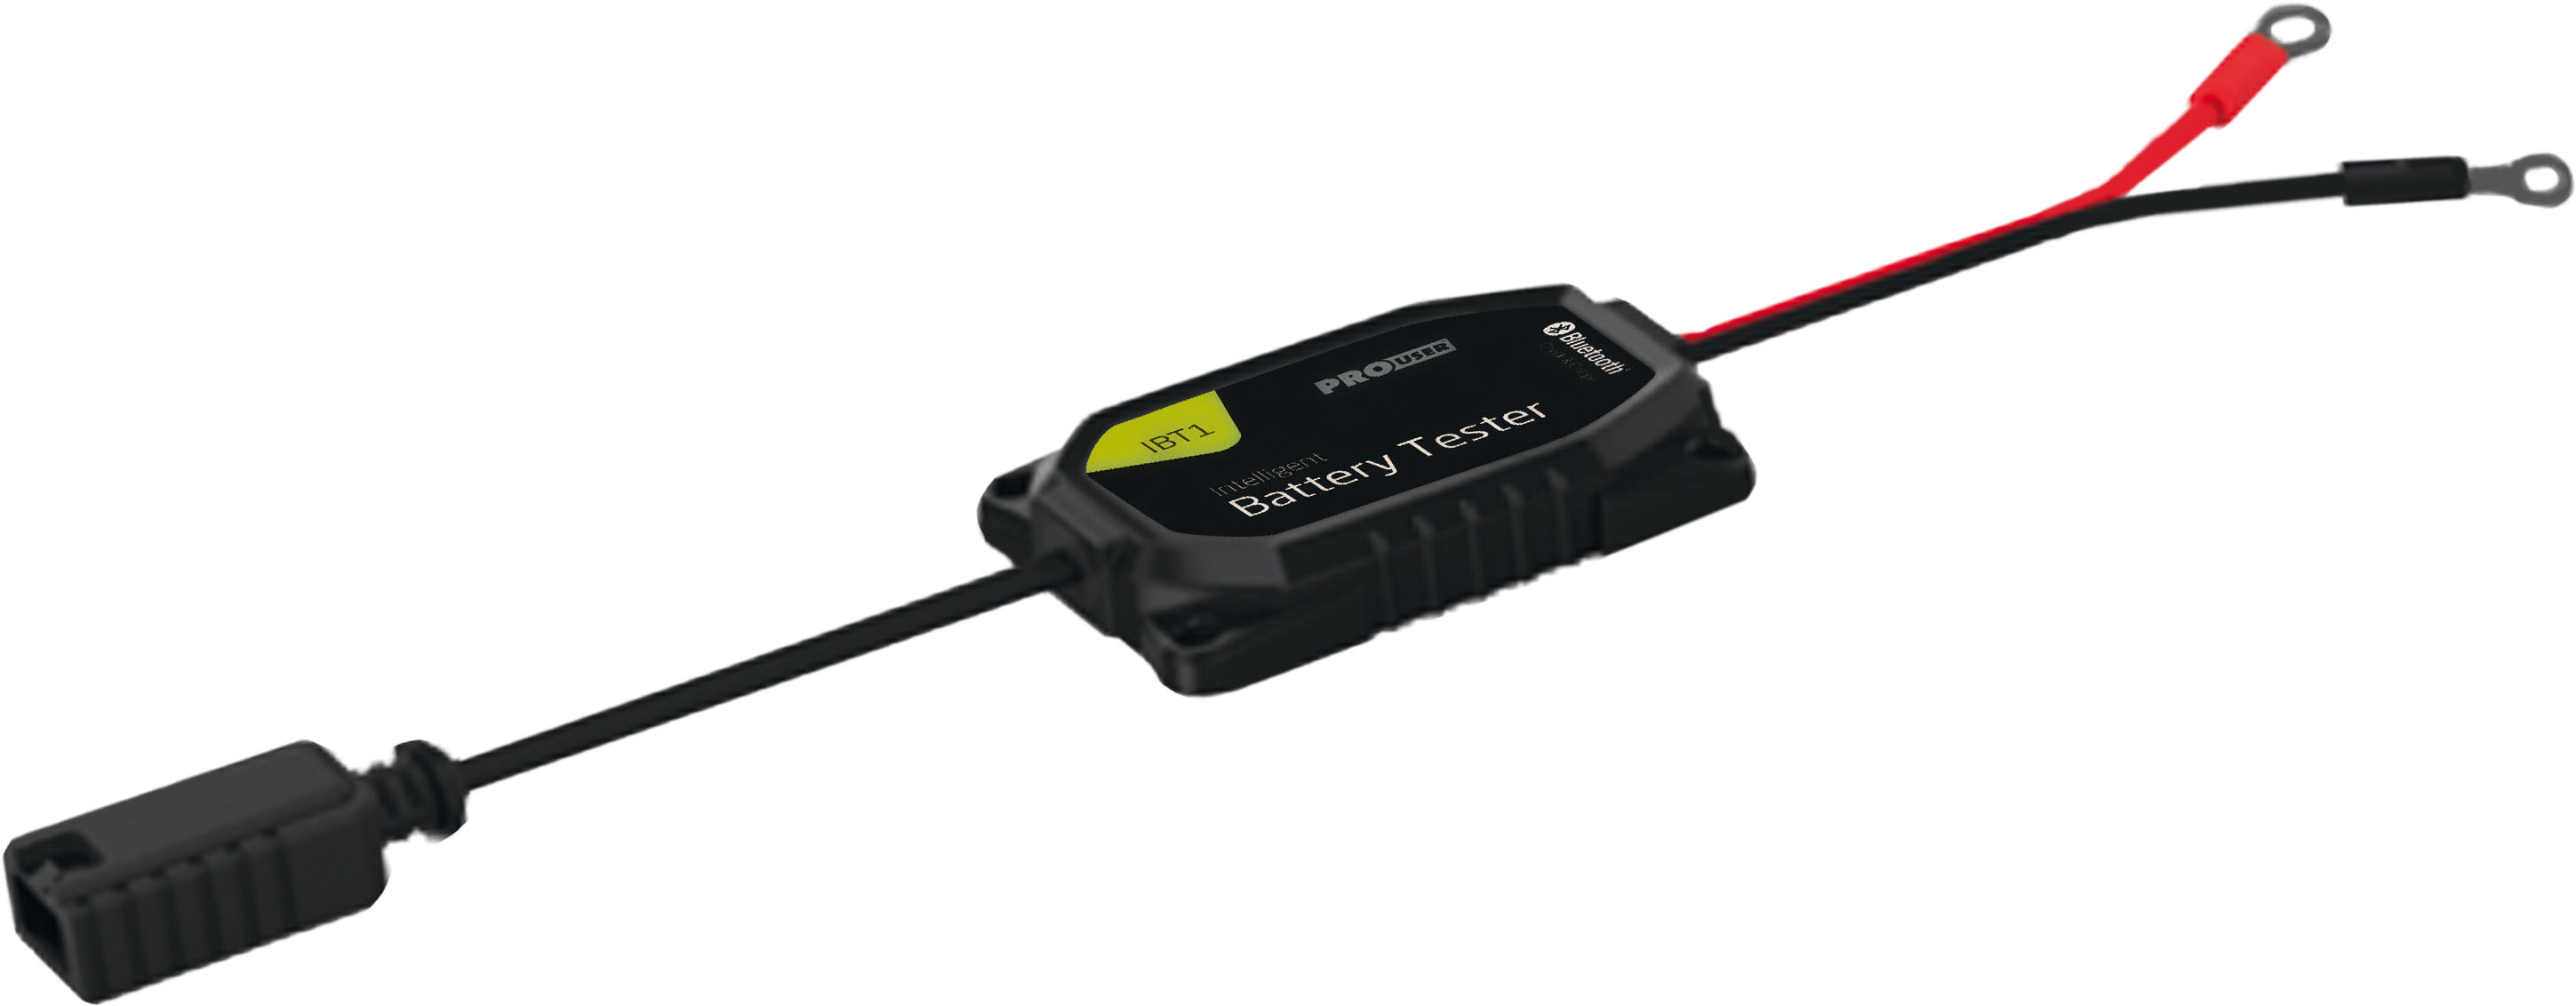 IBT1 - Tester di batteria Bluetooth per caricabatterie IBC